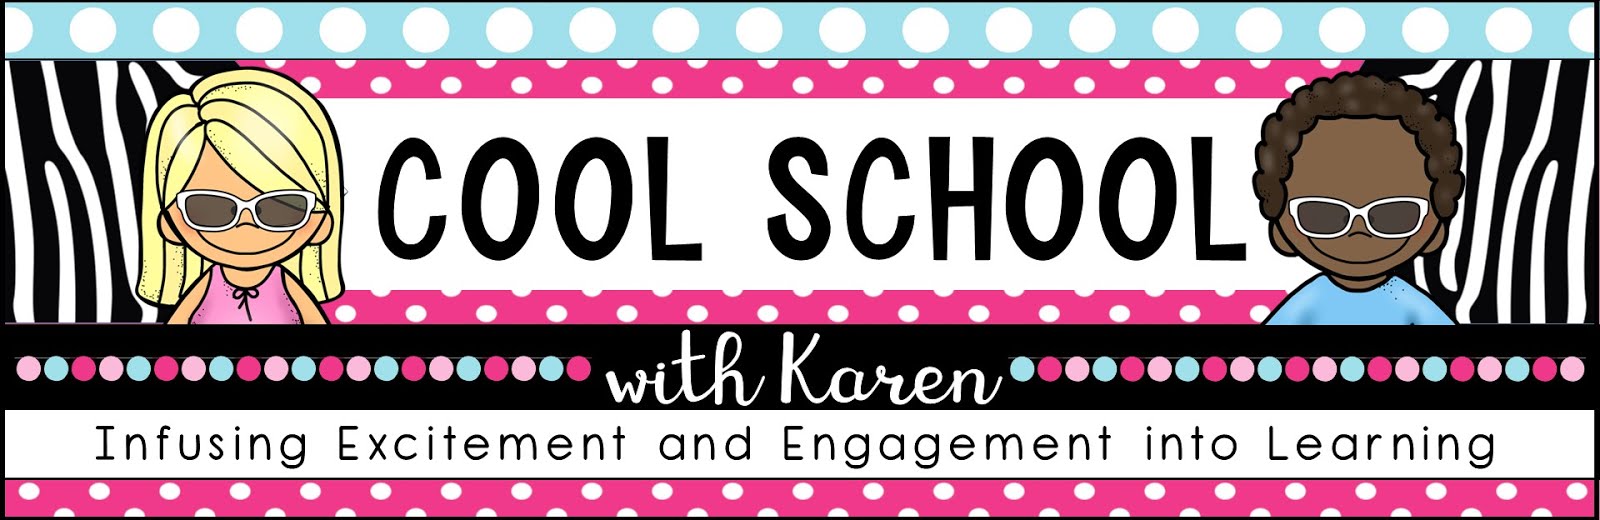 Cool School with Karen